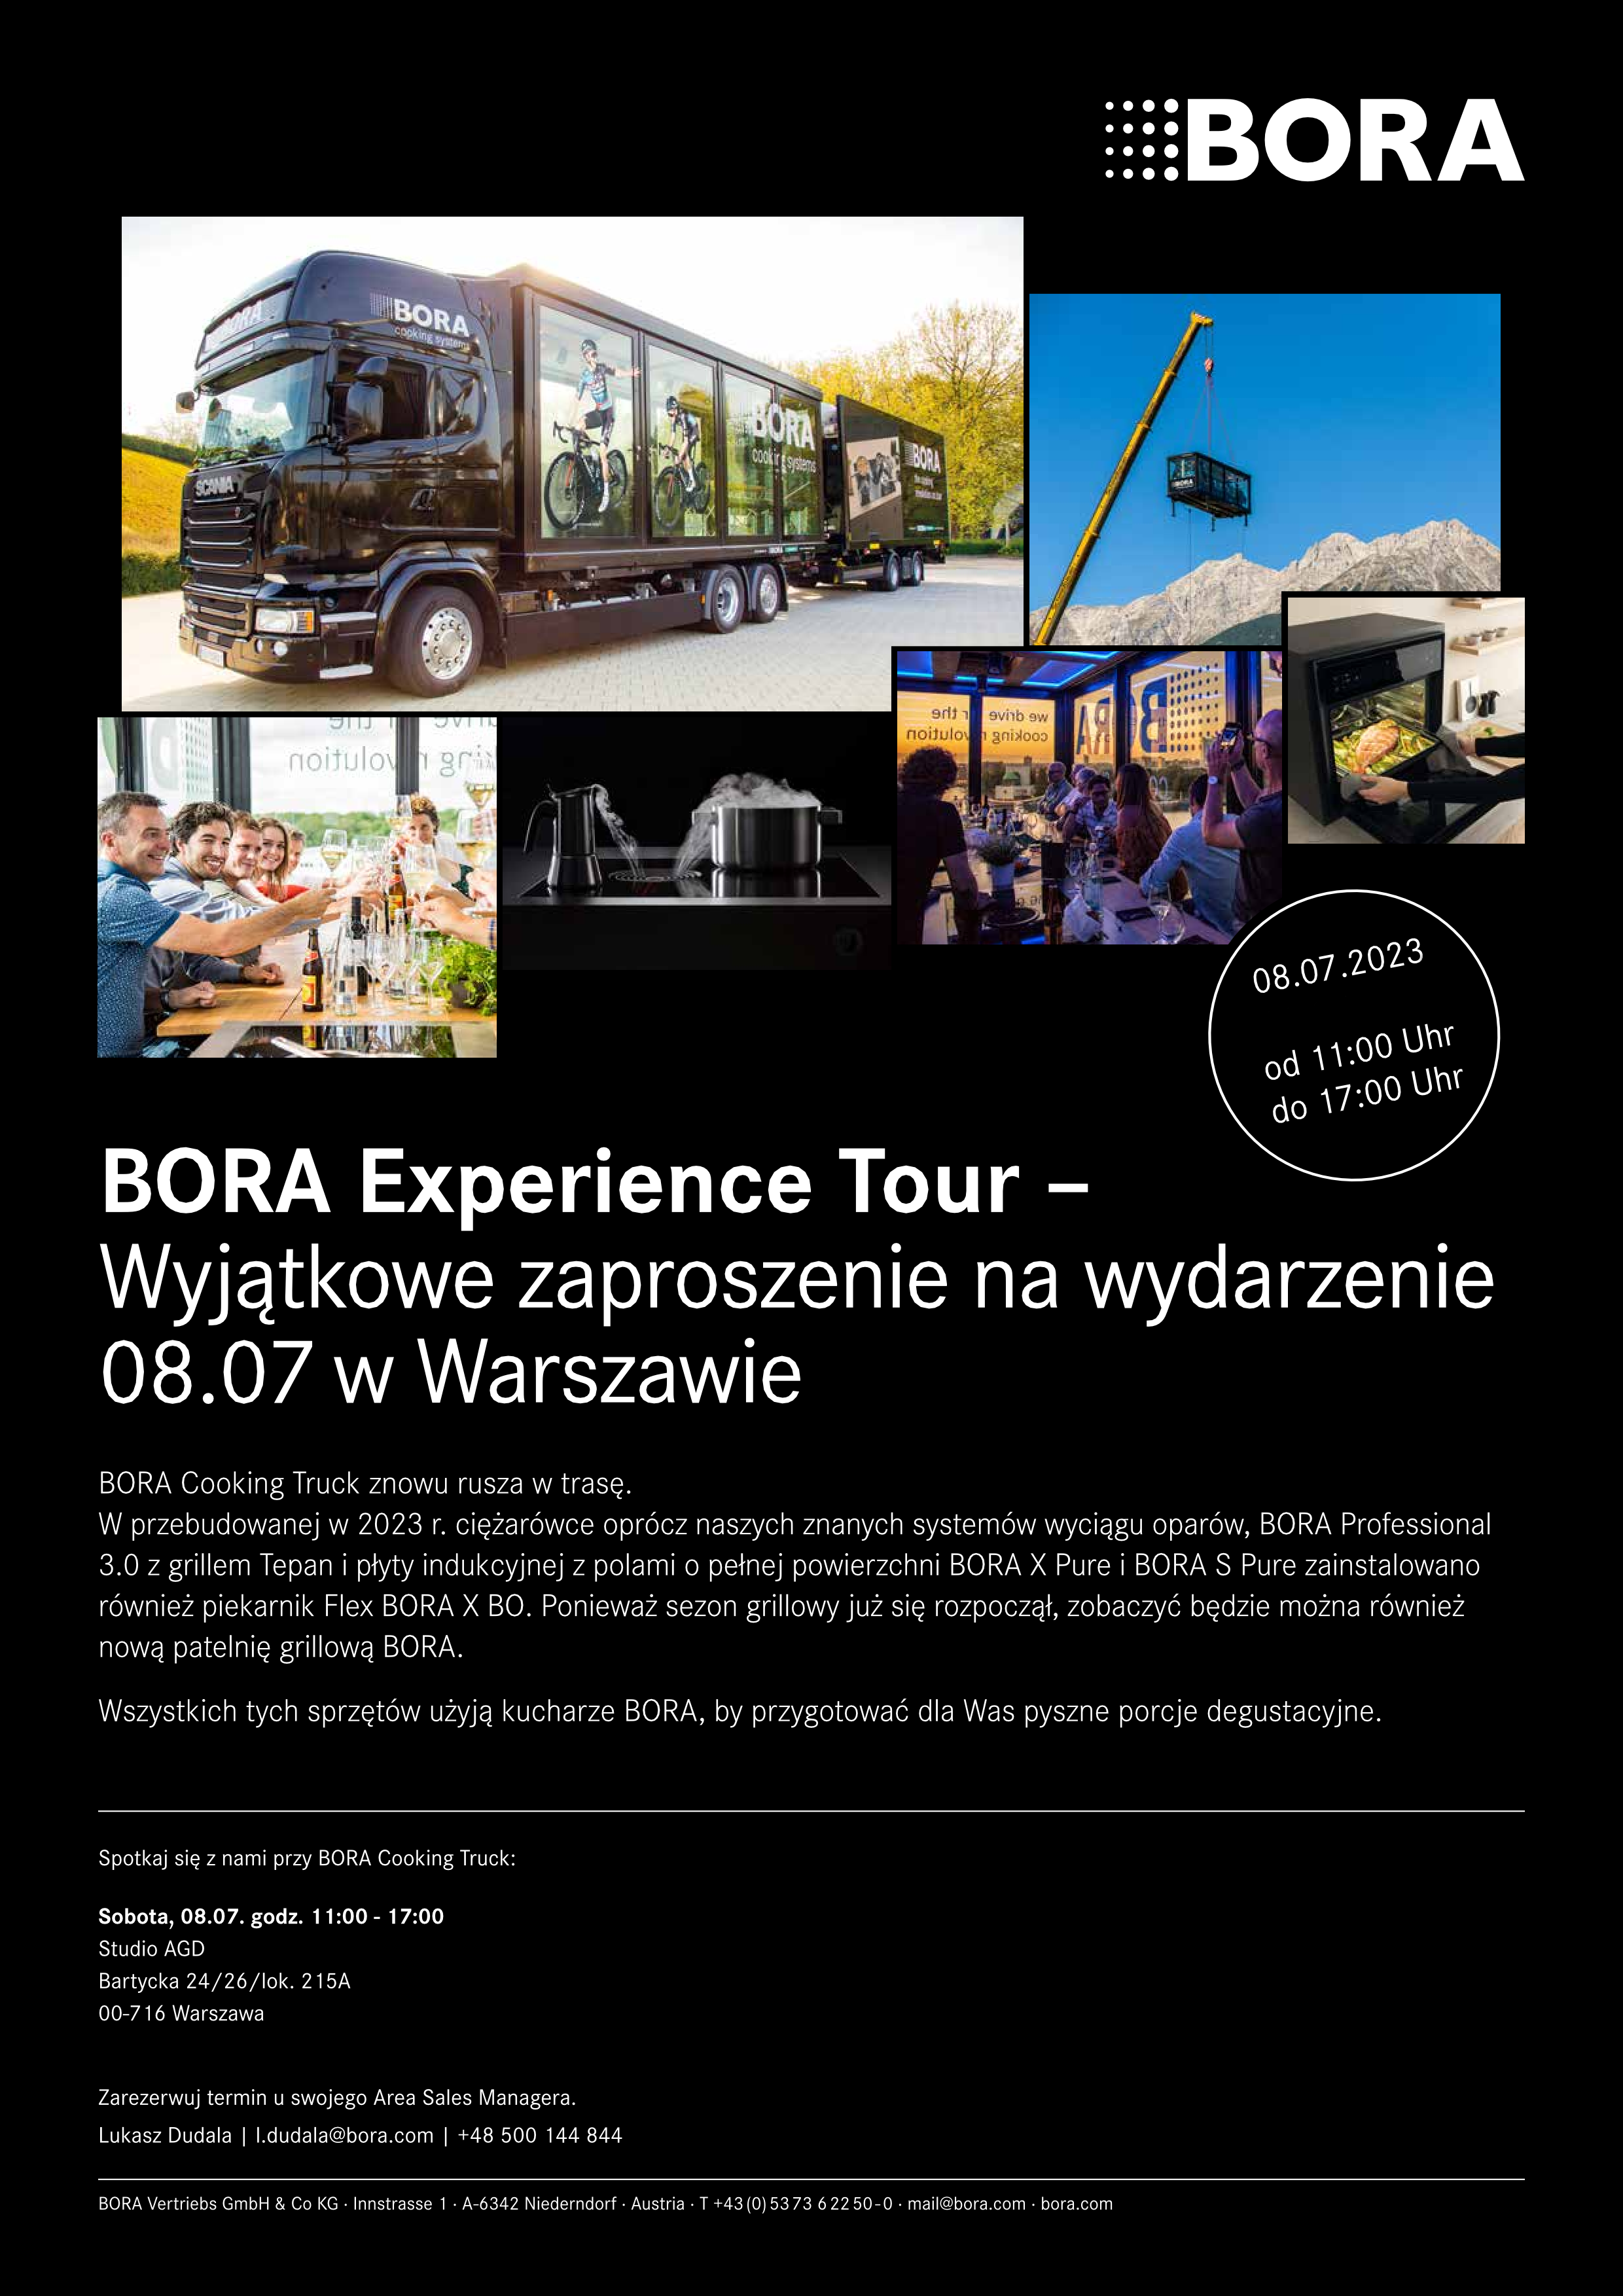 BORA Experience Tour w studio_AGD